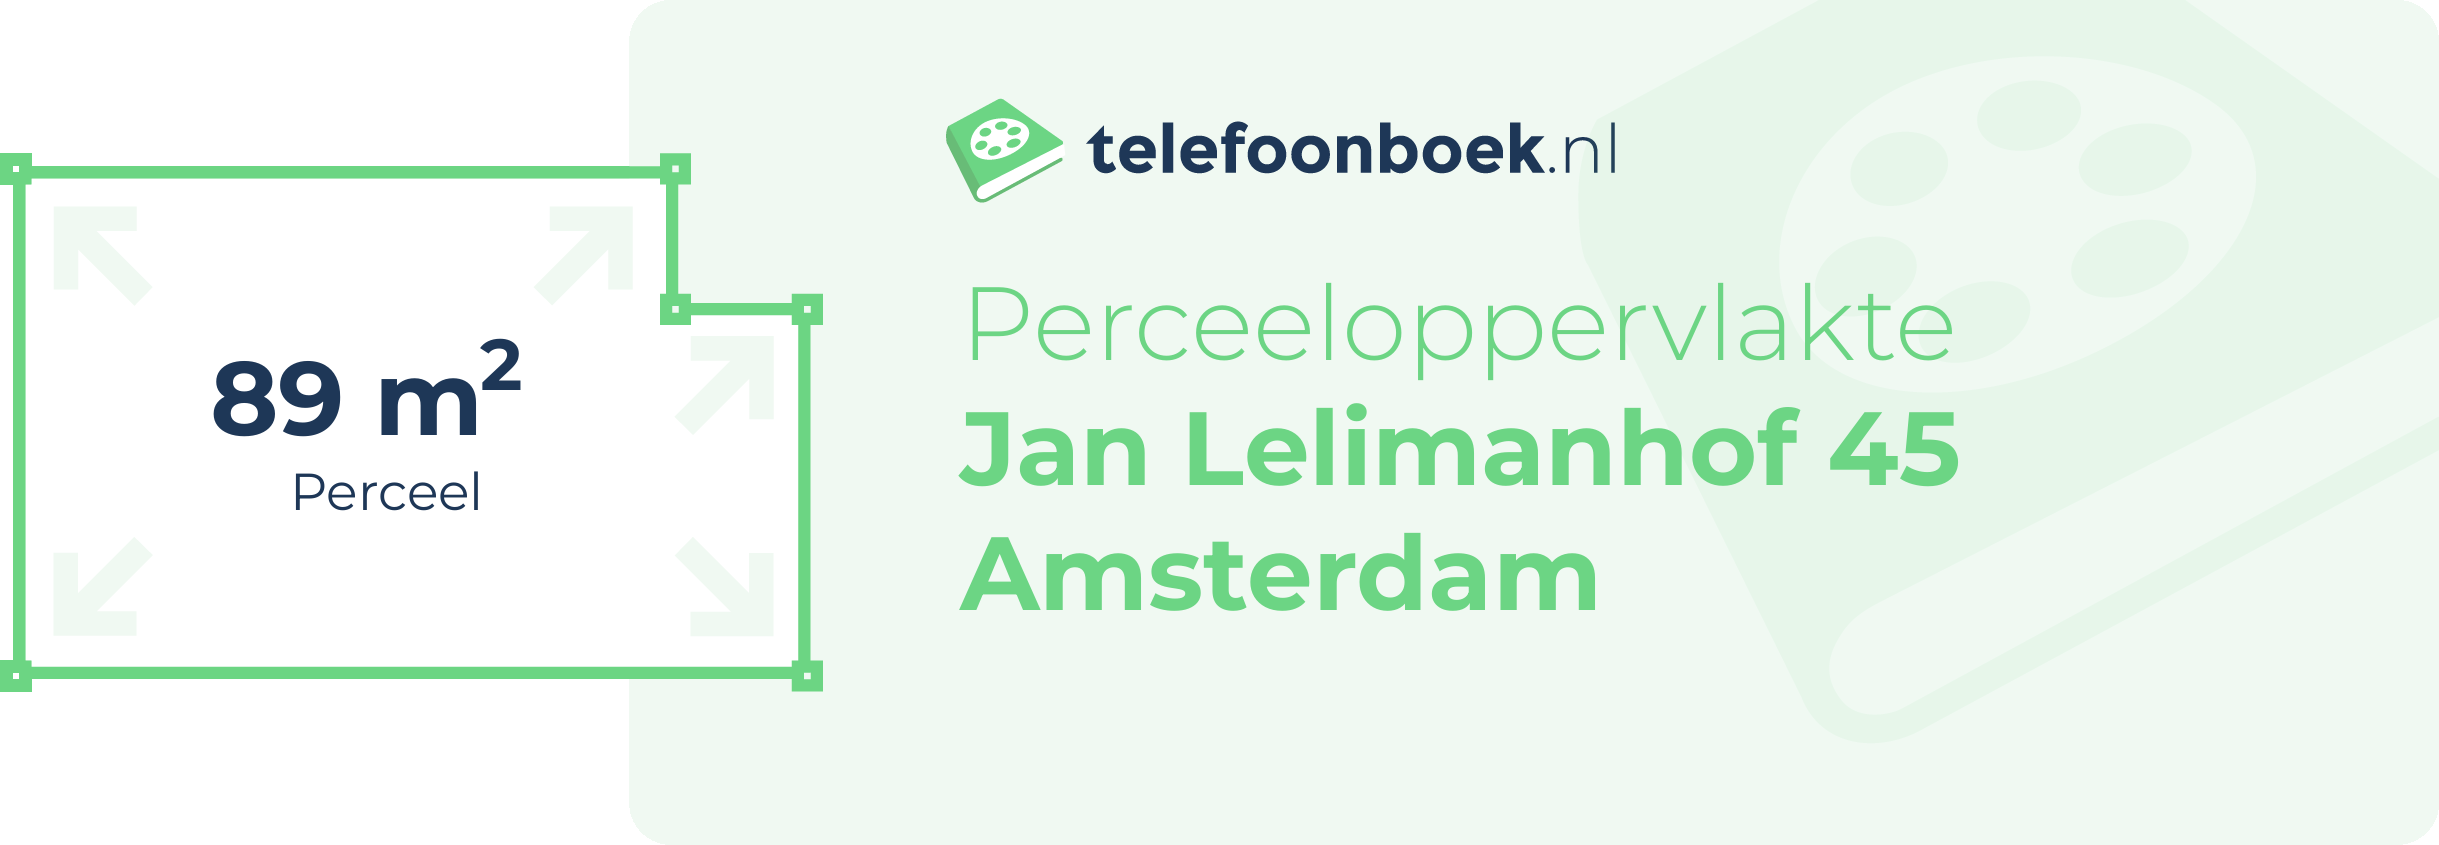 Perceeloppervlakte Jan Lelimanhof 45 Amsterdam